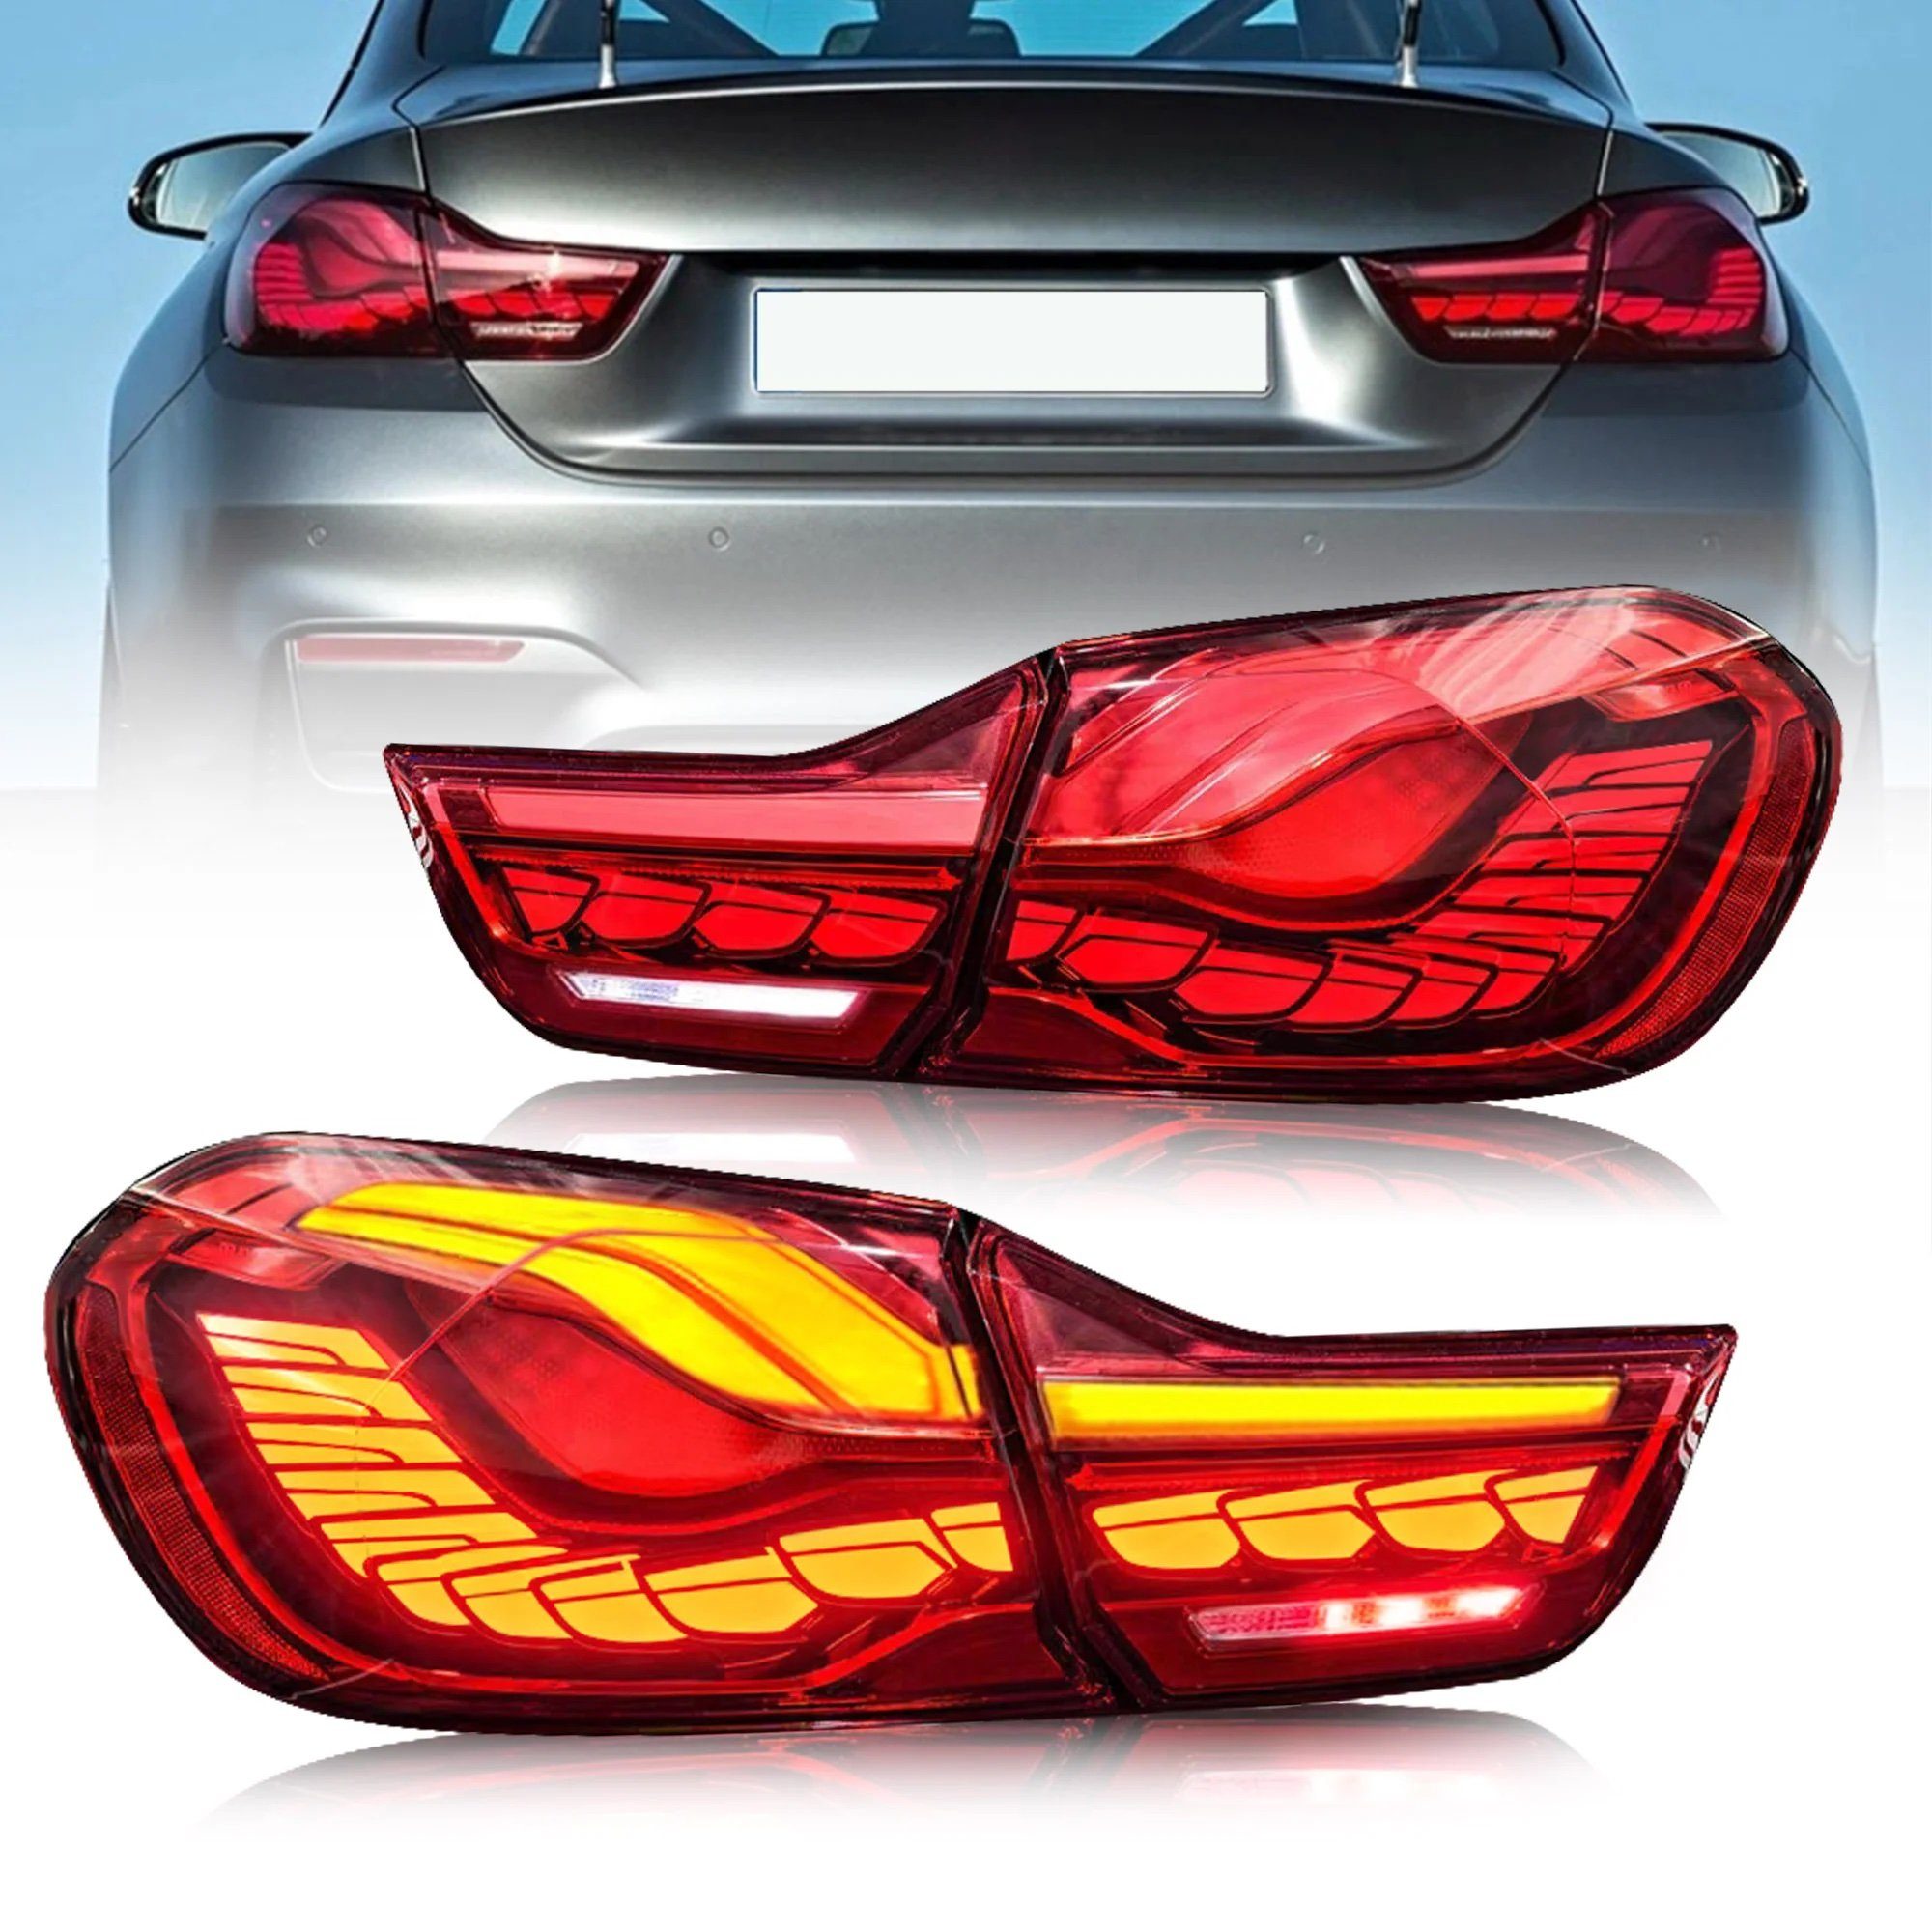 LLCTOOLS Rückleuchte Voll LED Rückleuchten für BMW F32 F33 F36 F82 Bj. 2013- rot OLED, LED, LED fest integriert